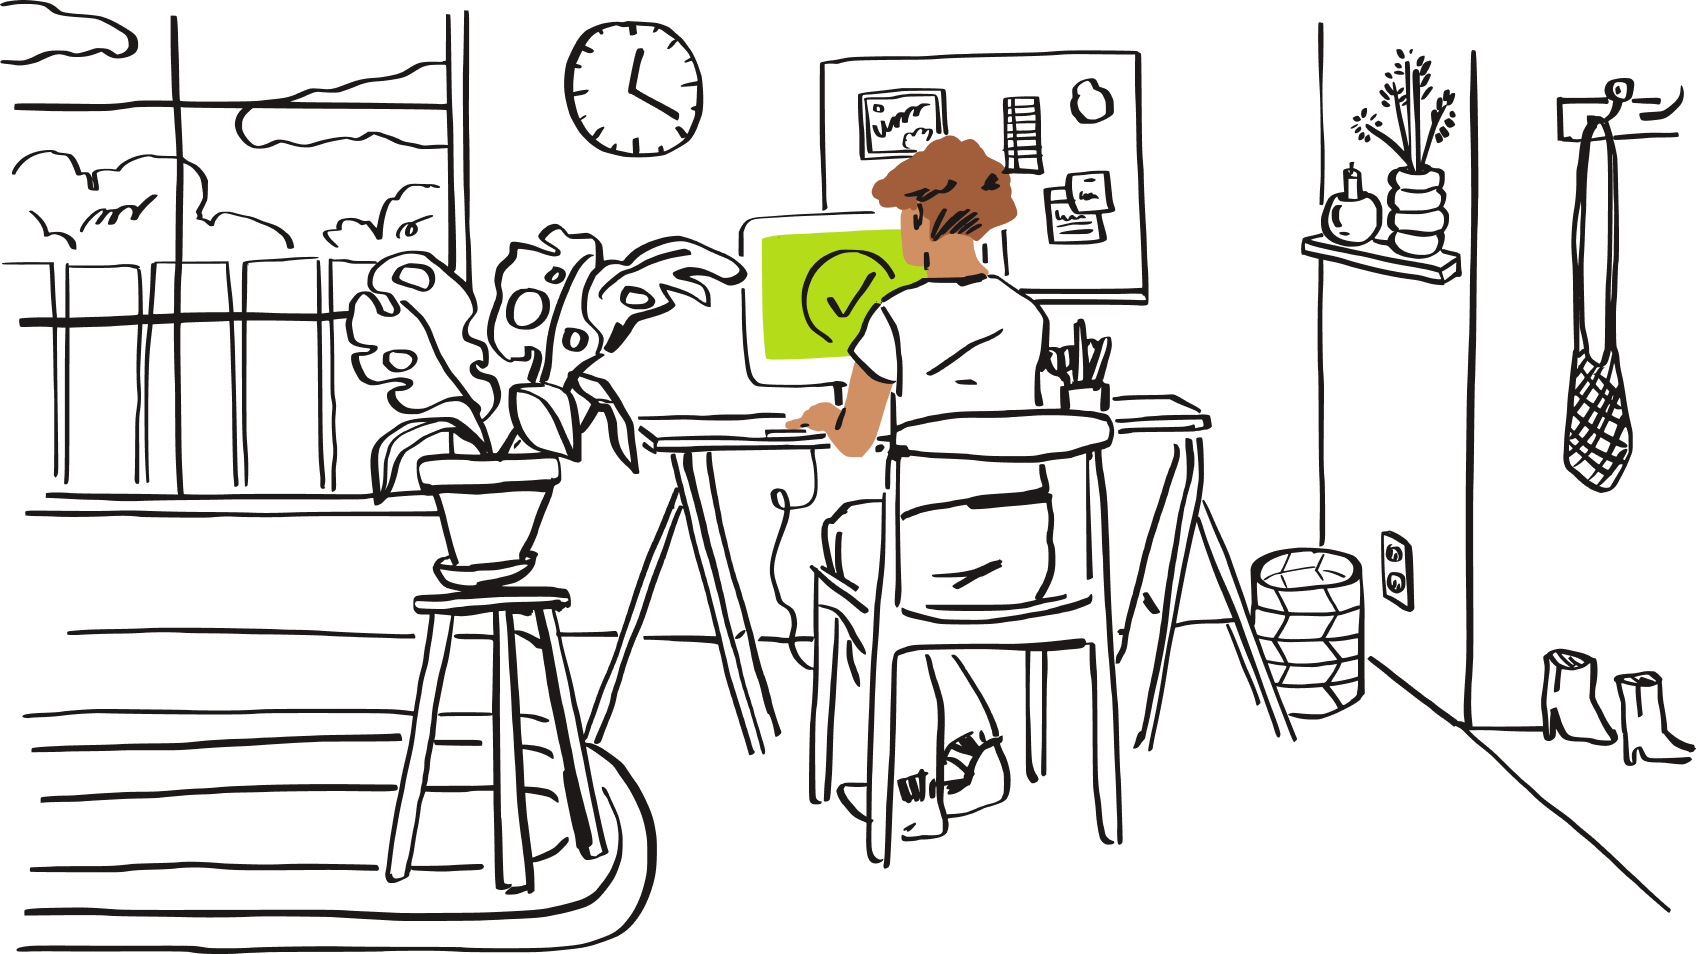 Een illustratie van een persoon die aan een computer zit, met een groen vinkje op het scherm.